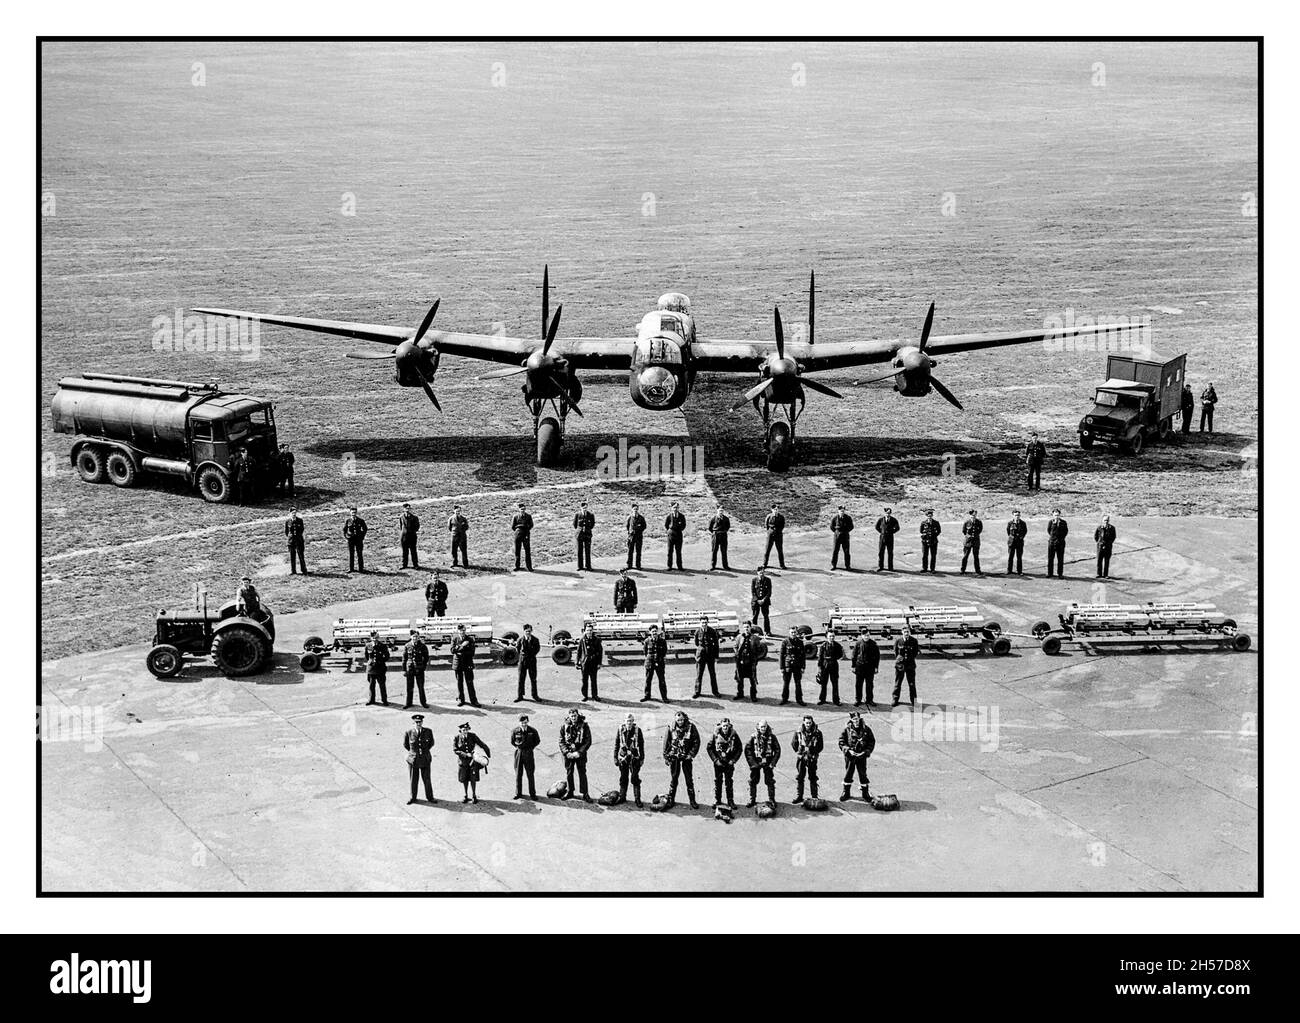 PERSONNEL DE SERVICE DES BOMBARDIERS LANCASTER WW2 tout le personnel de la RAF est tenu de maintenir un commandement des bombardiers Avro Lancaster de la RAF en vol lors d'opérations de guerre, prises à Scampton, Lincolnshire, le 11 juin 1942.Record remarquable des diverses personnes et devoirs requis pendant la Seconde Guerre mondiale pour garder l'avion en vol et dans une action vitale courageuse contre l'Allemagne nazie Banque D'Images